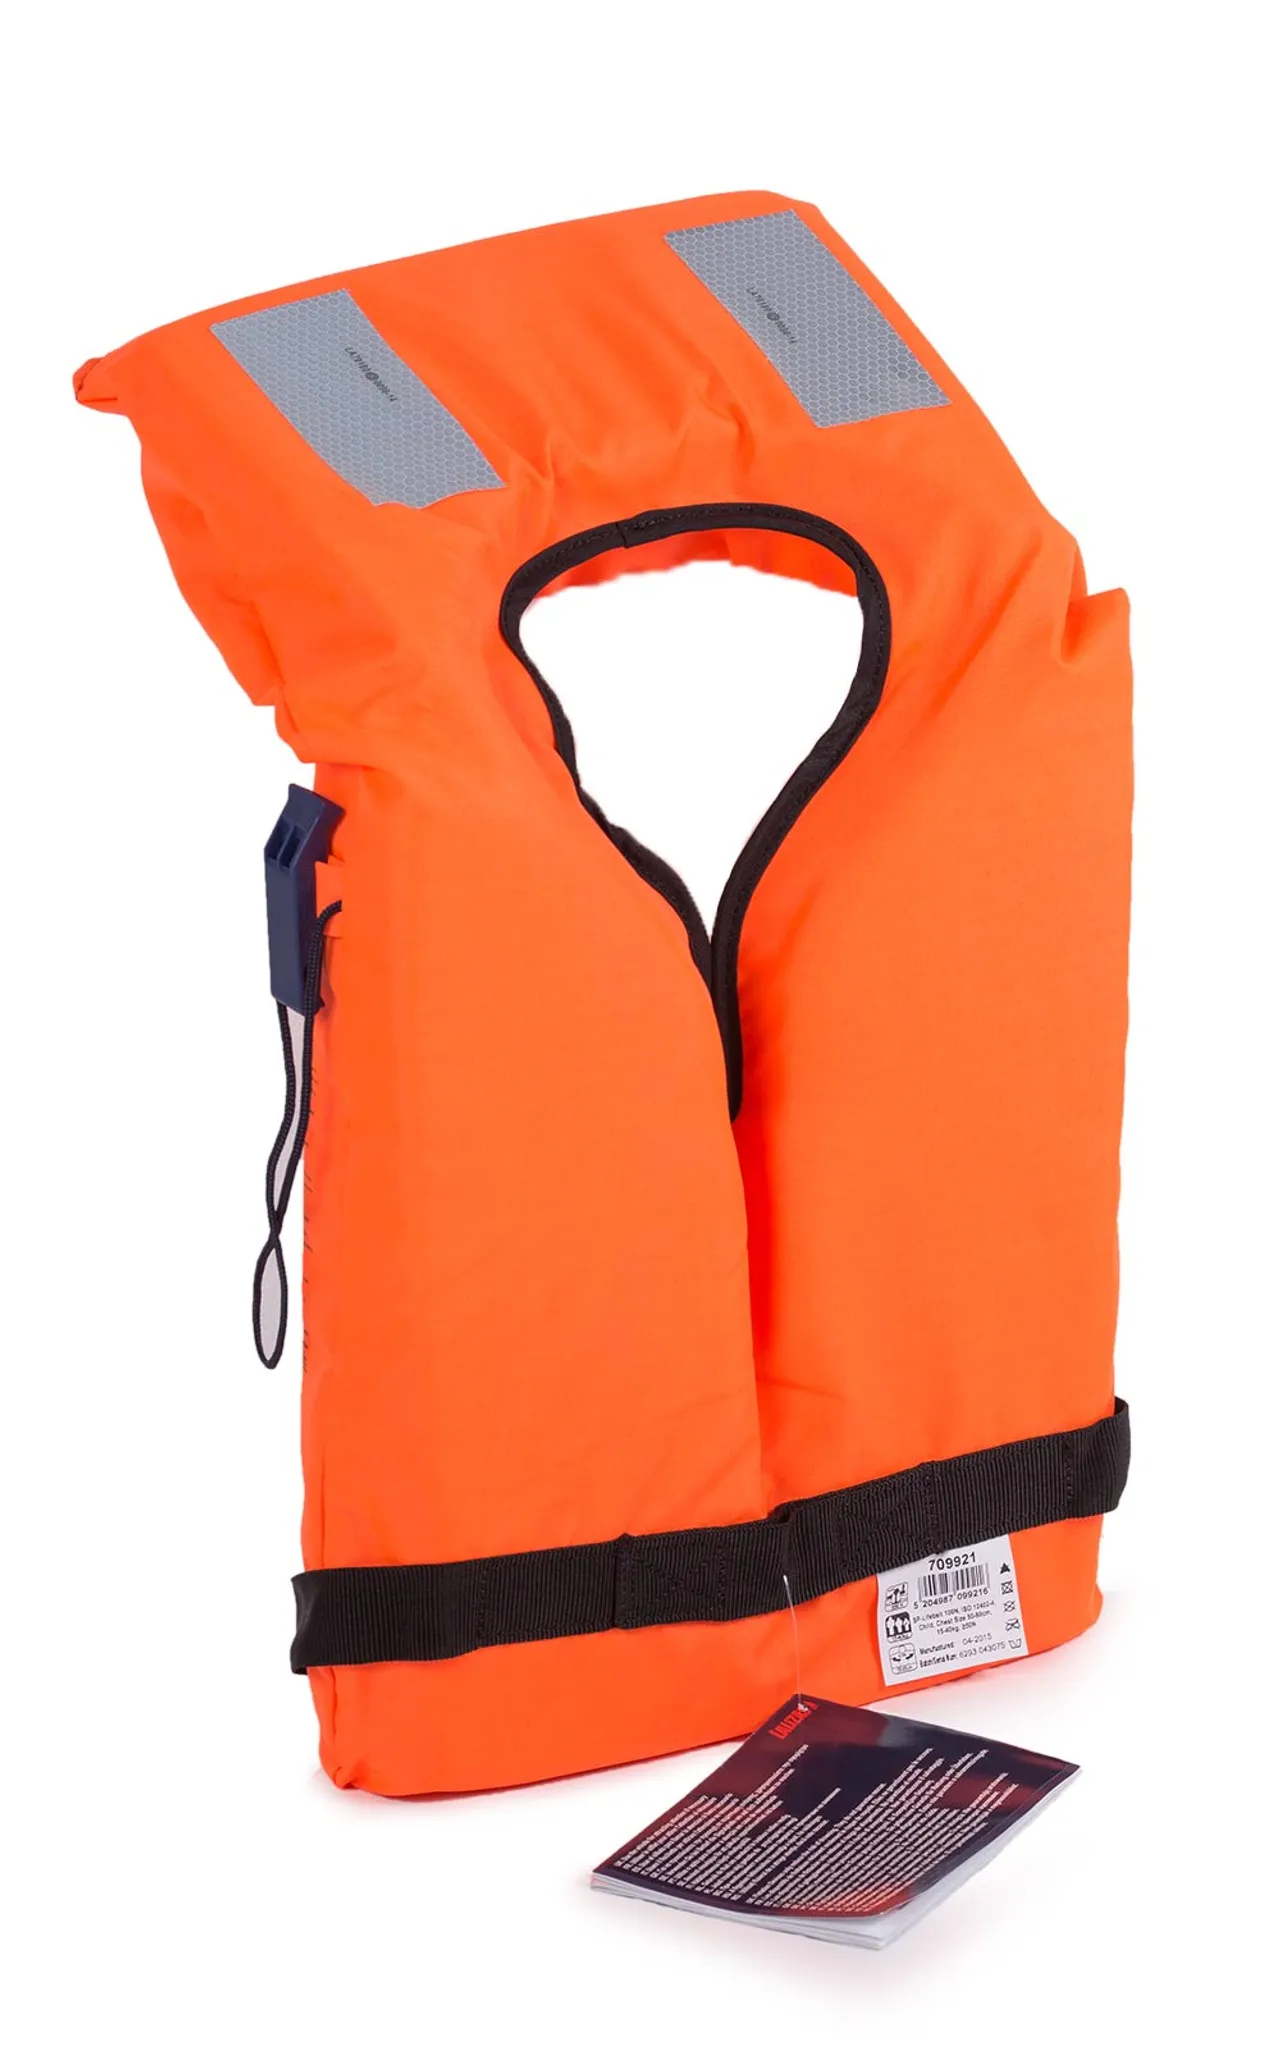 Rettungsweste Erwachsene Kinder Schwimmweste Lifejacket Kajakweste Pfeife  S-XXXL